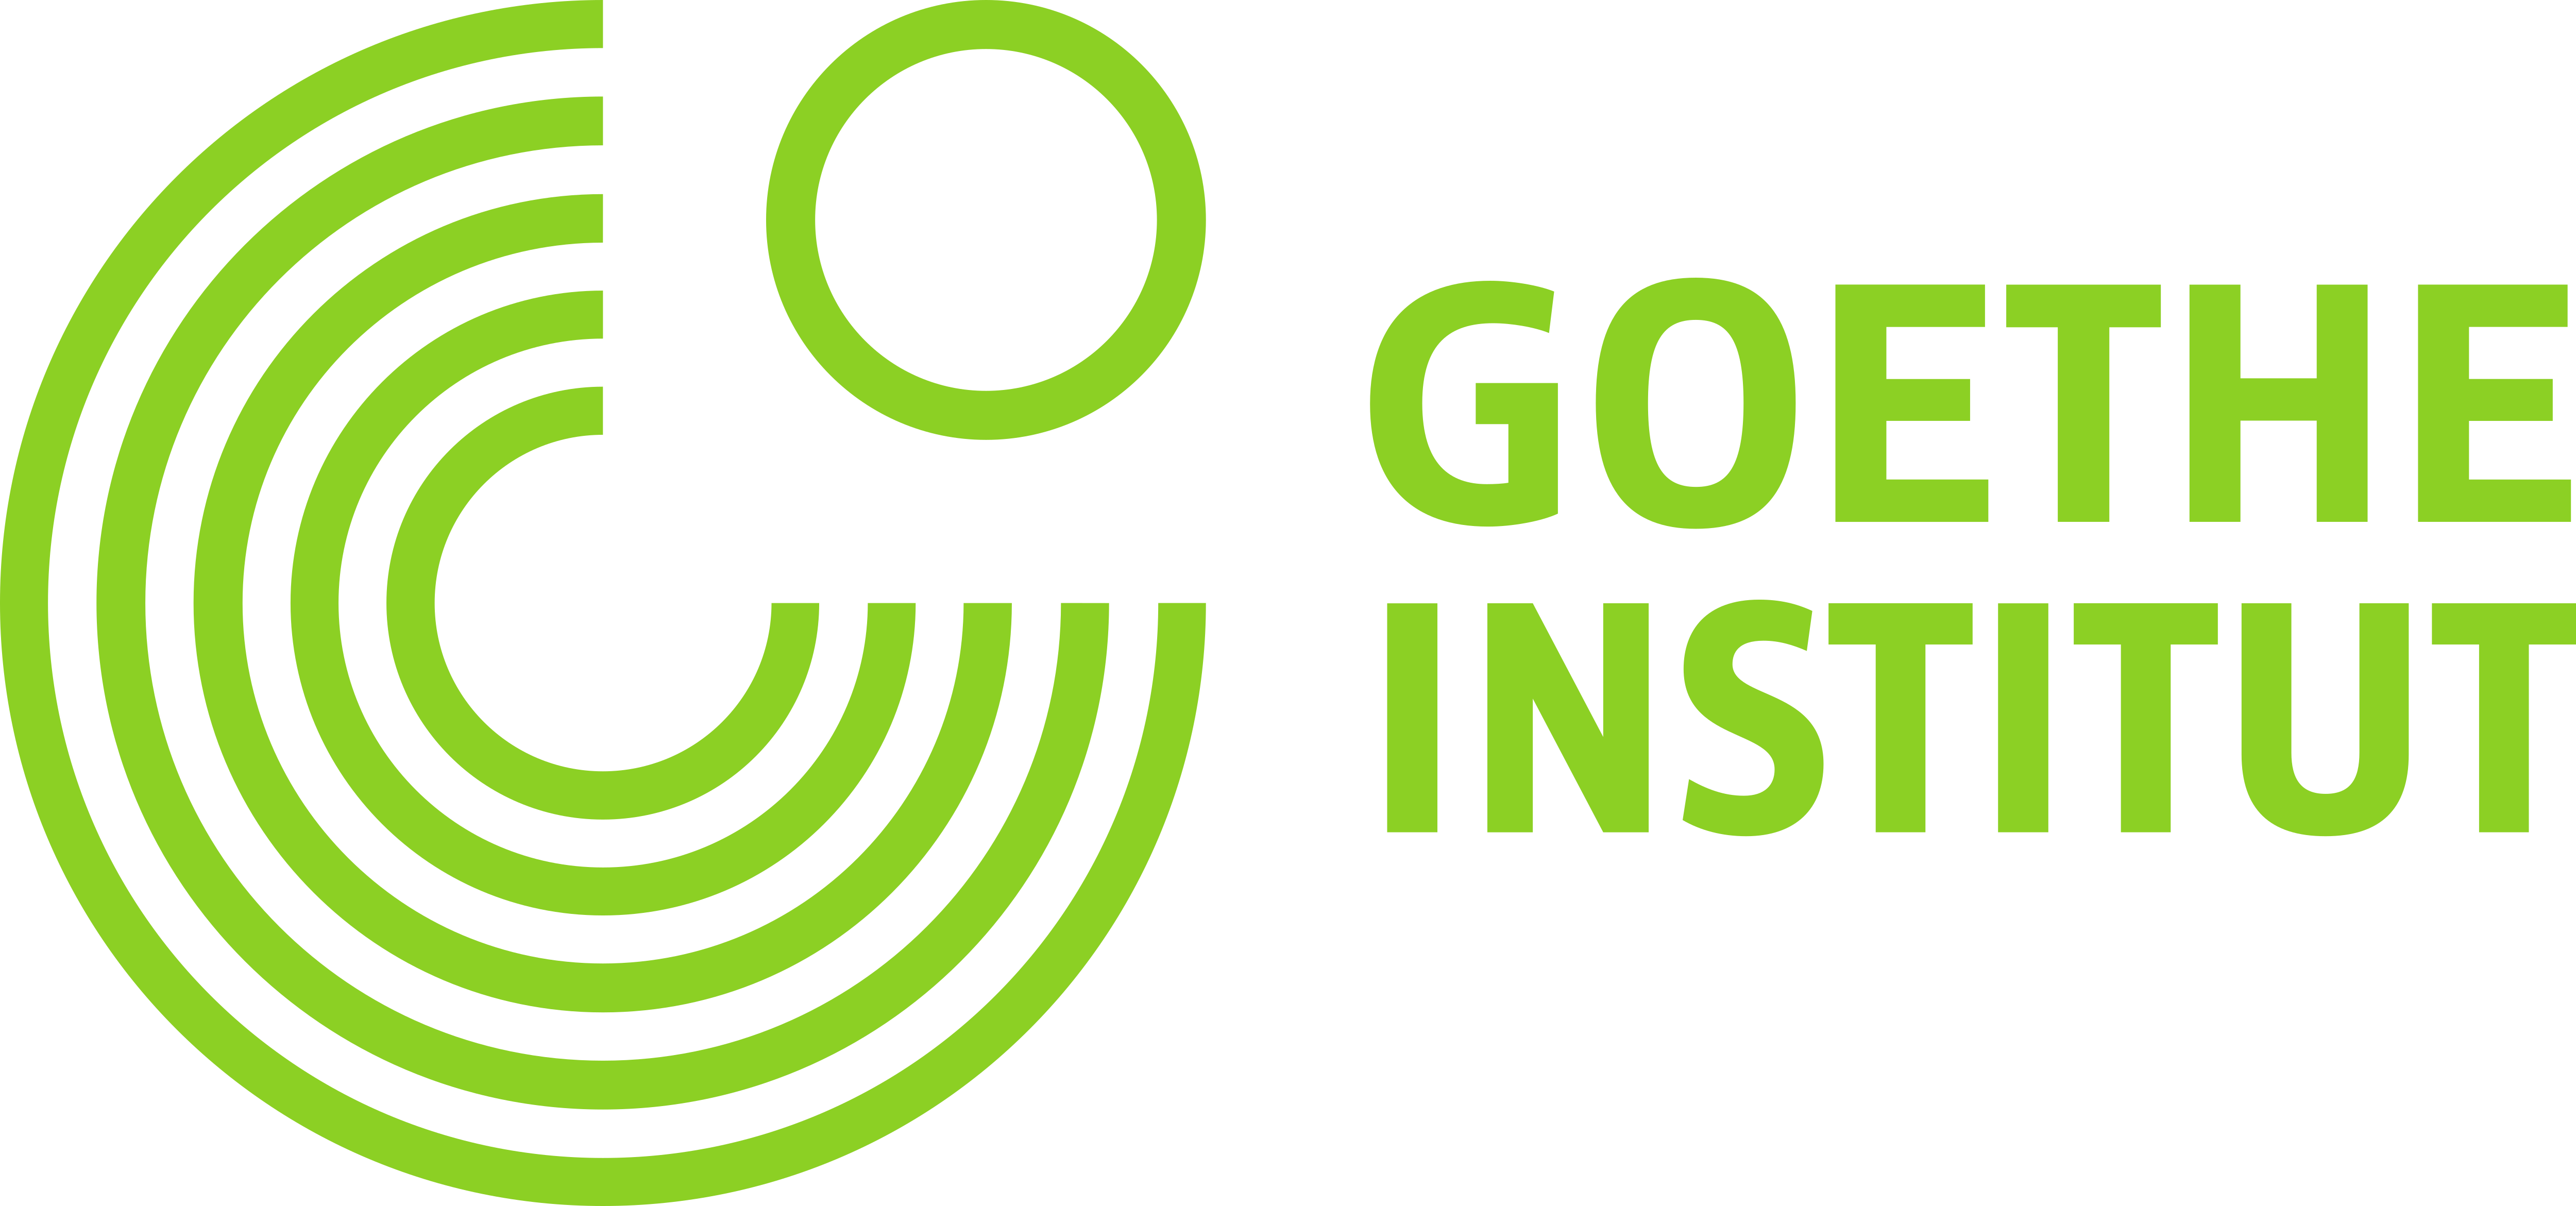 Goethe Institut  Logos  Download